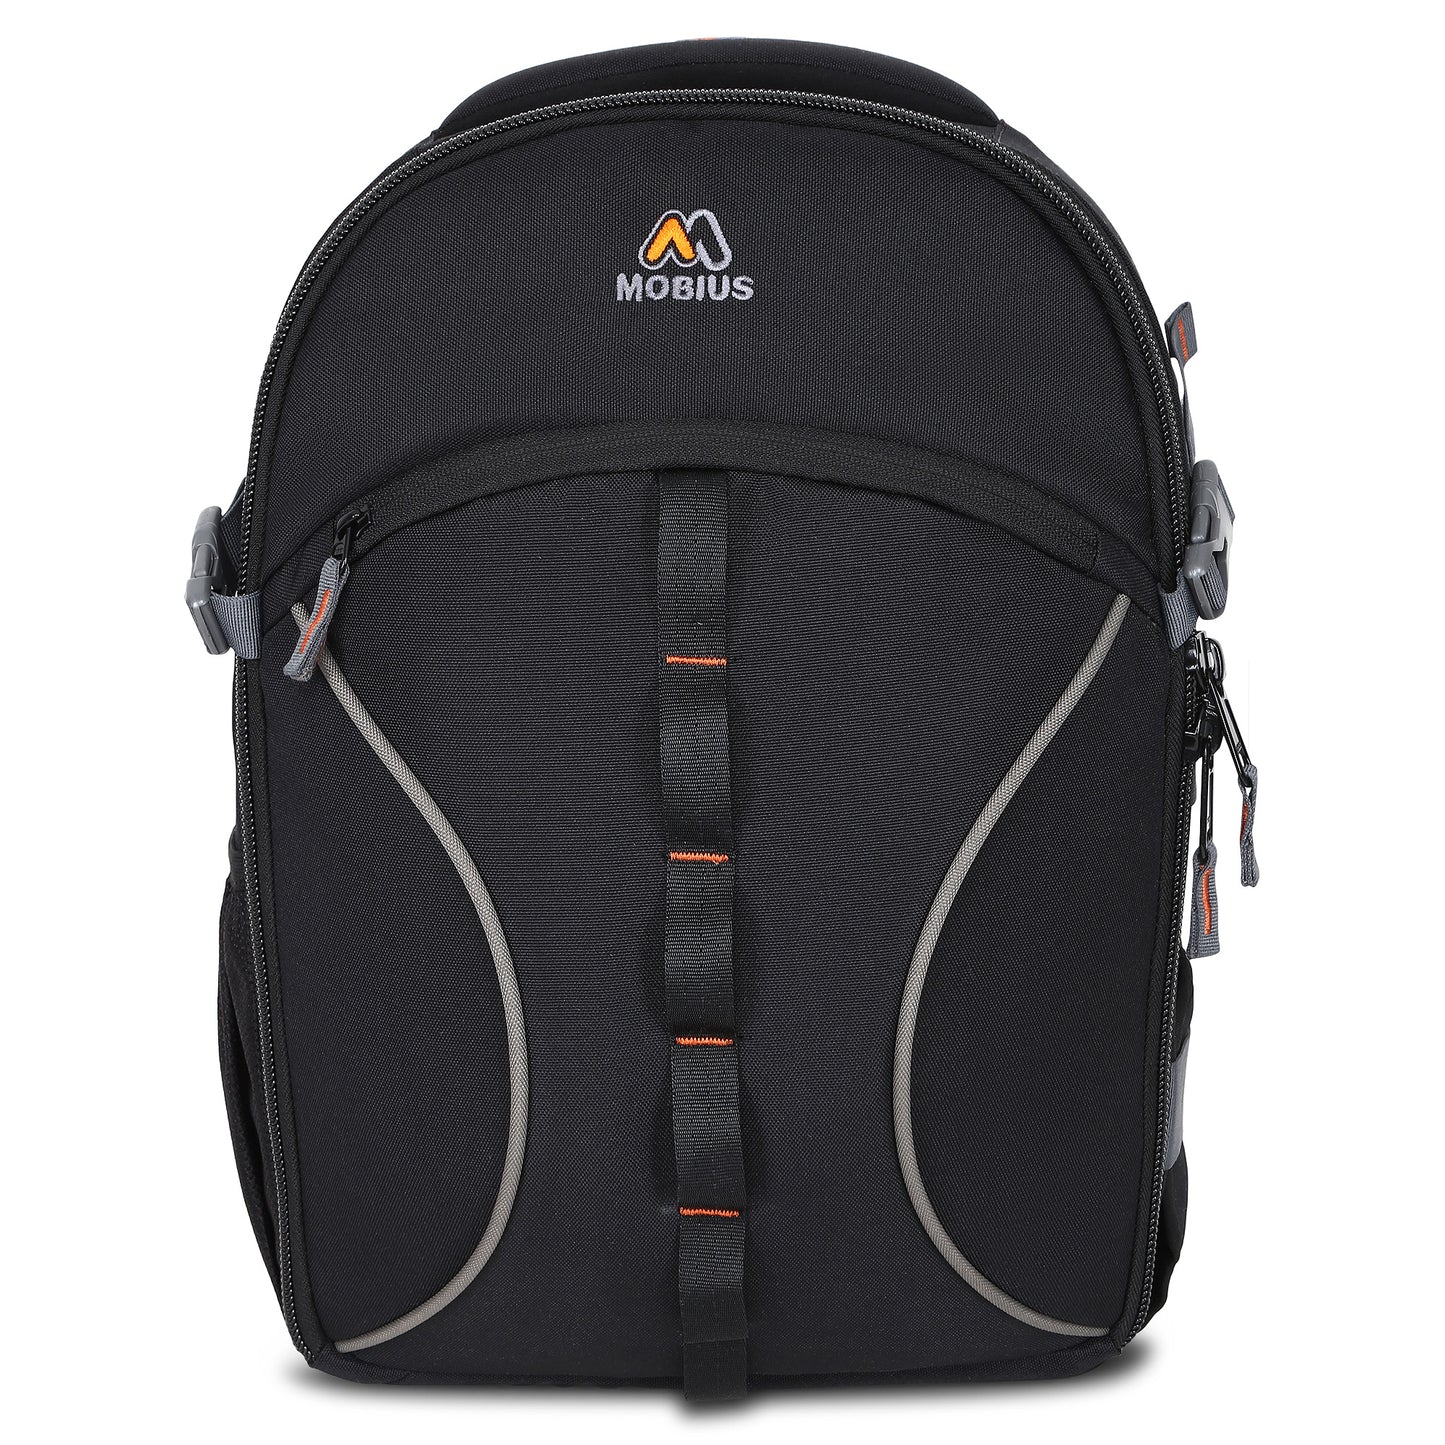 Mobius Bullseye DSLR Backpack